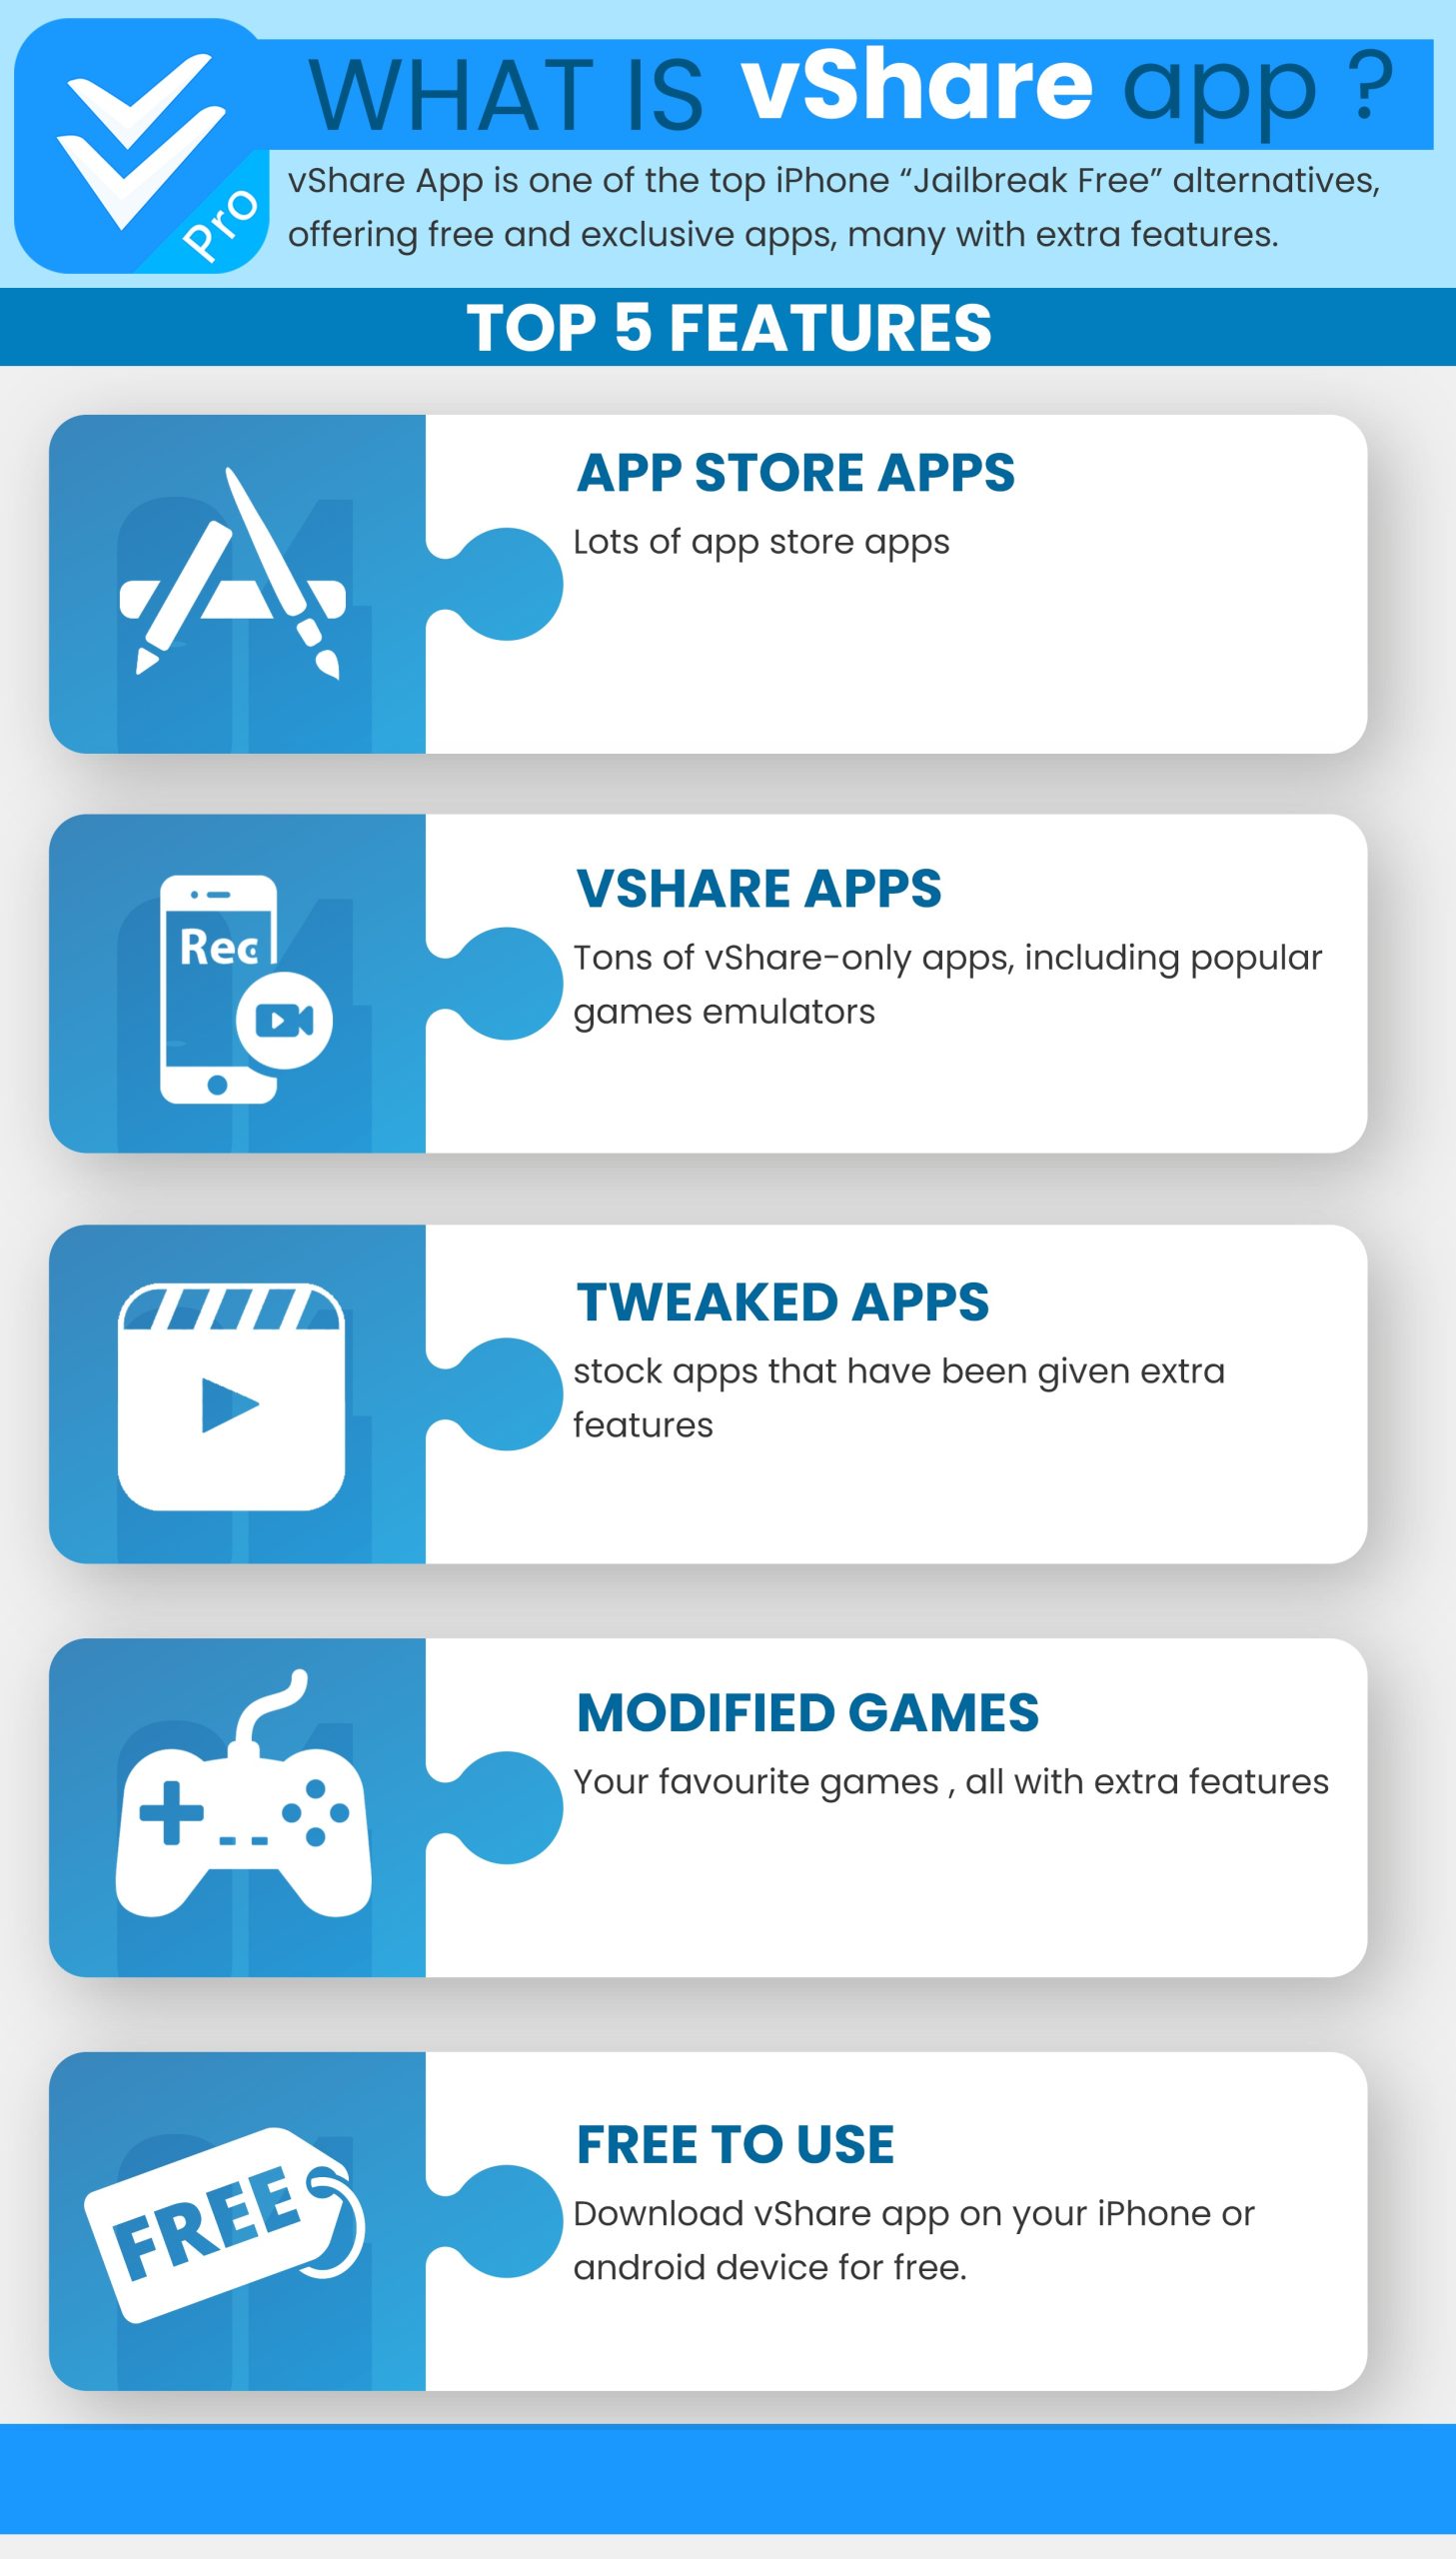 vshare app infographic